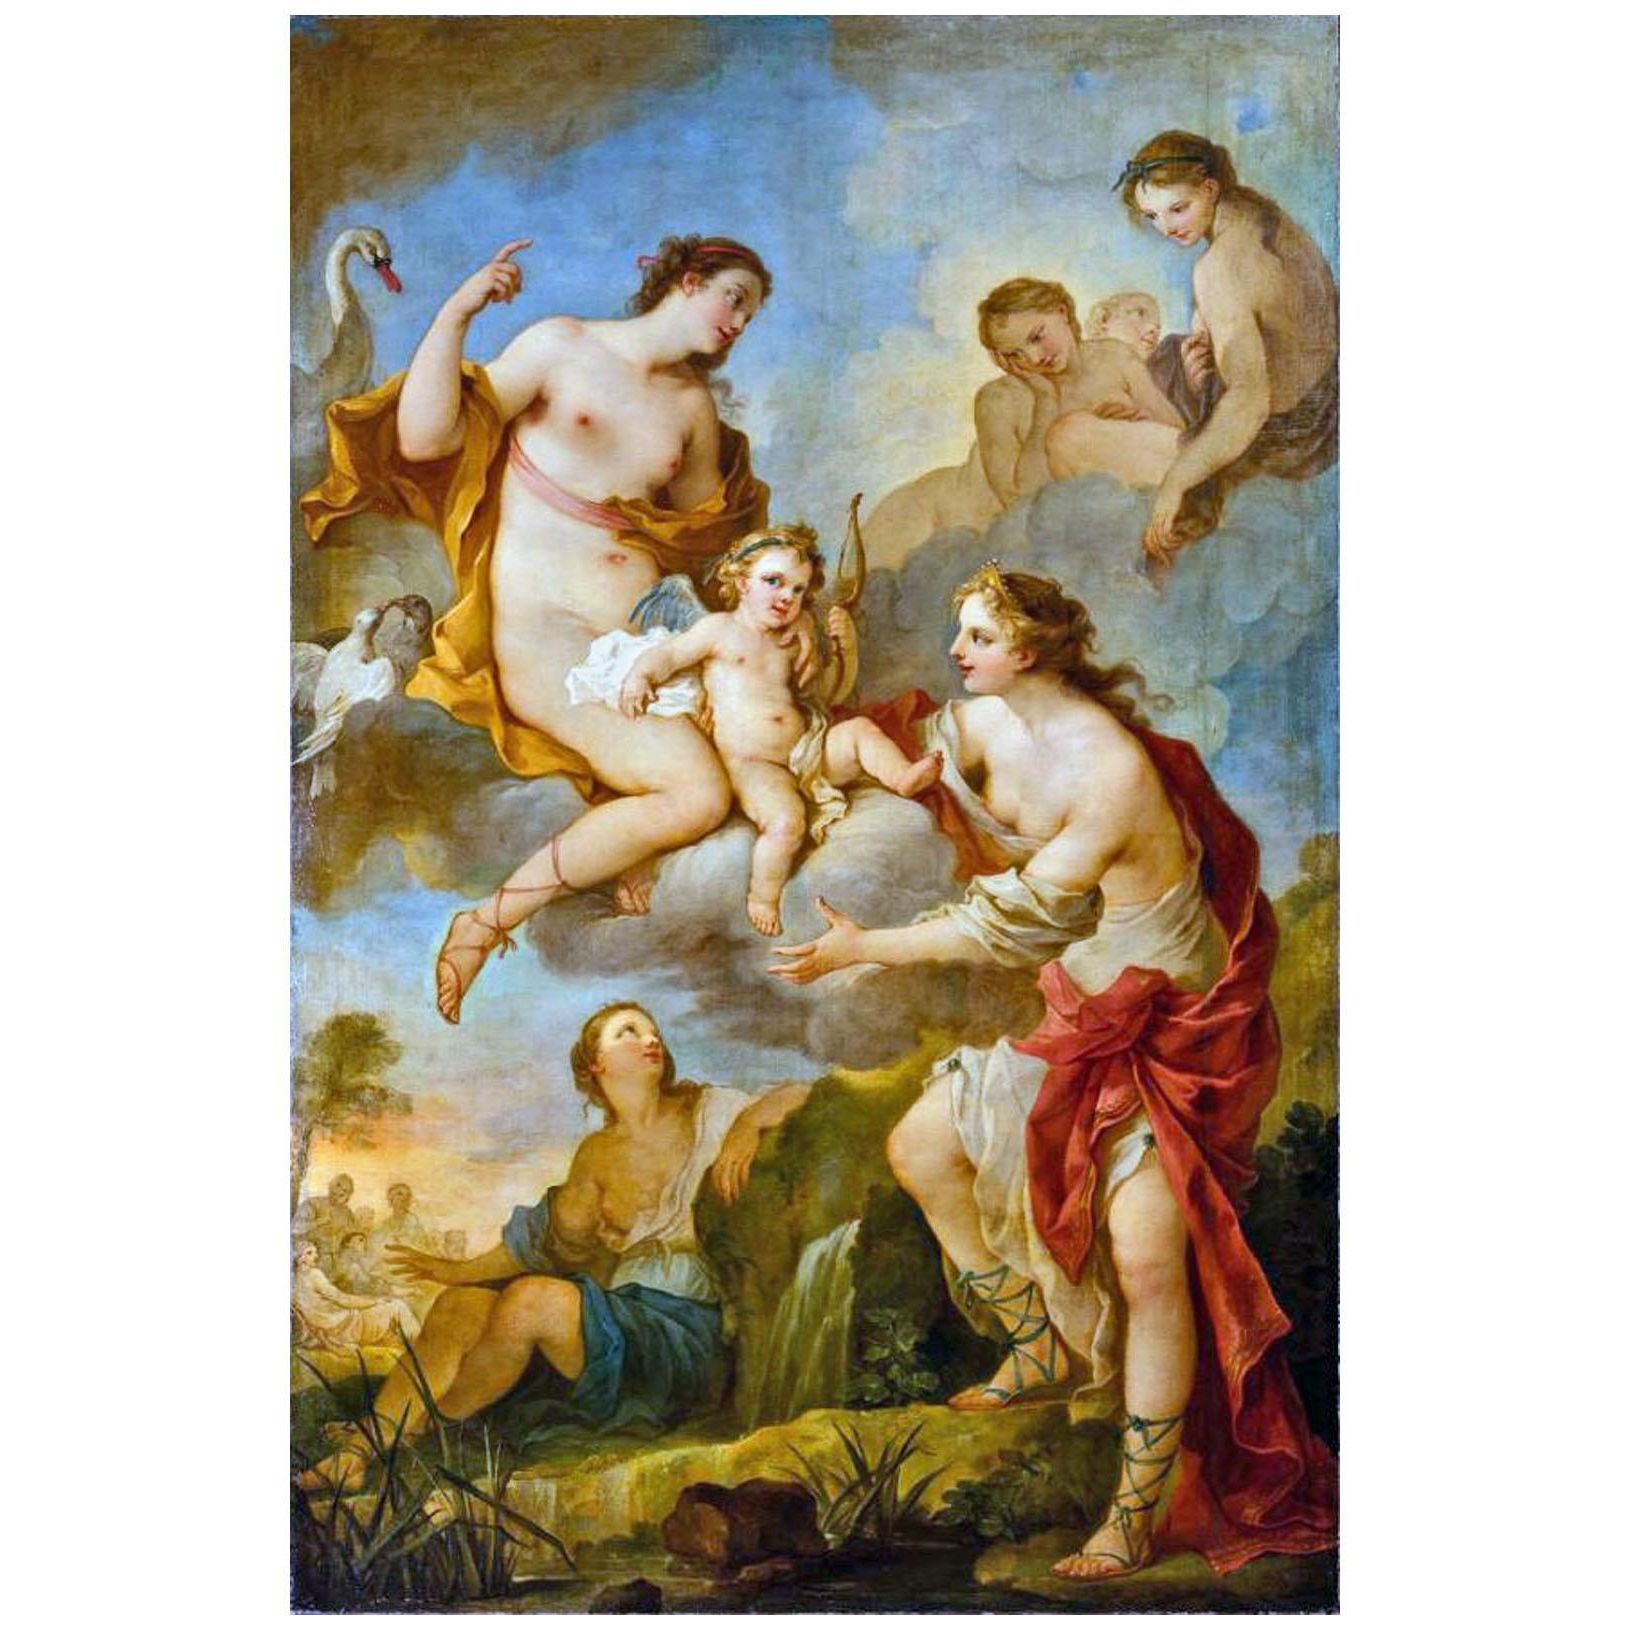 Charles-Joseph Natoire. Nourrir Cupidon. 1739. Pushkin Museum